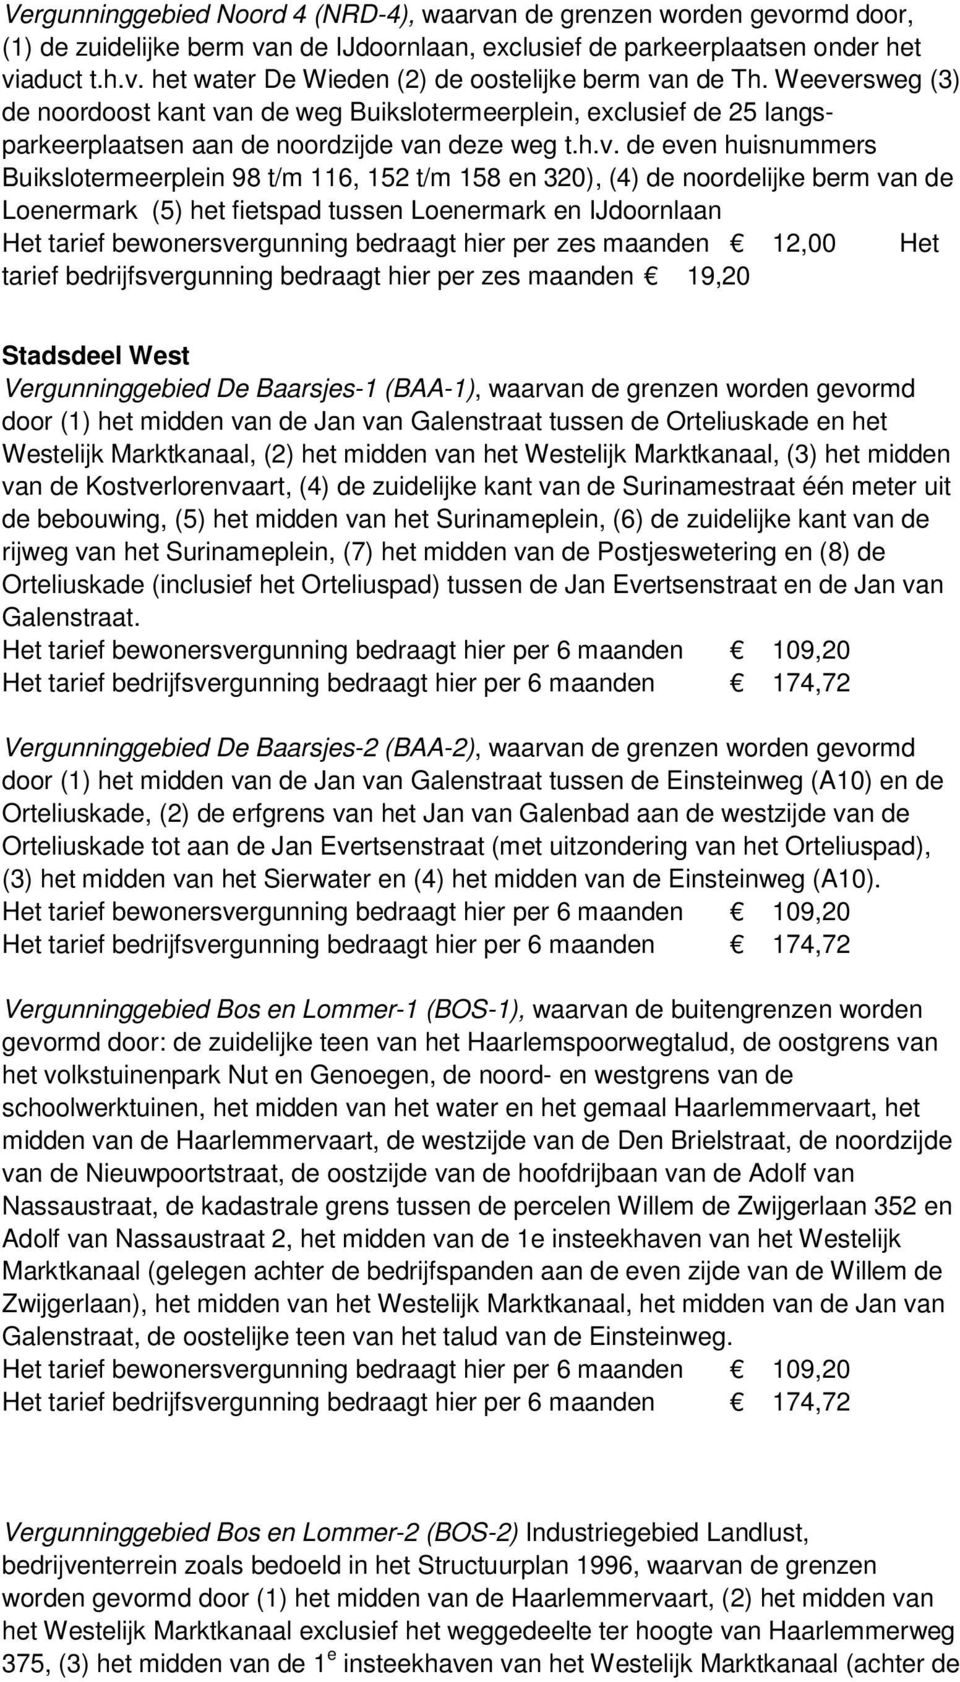 158 en 320), (4) de noordelijke berm van de Loenermark (5) het fietspad tussen Loenermark en IJdoornlaan Het tarief bewonersvergunning bedraagt hier per zes maanden 12,00 Het tarief